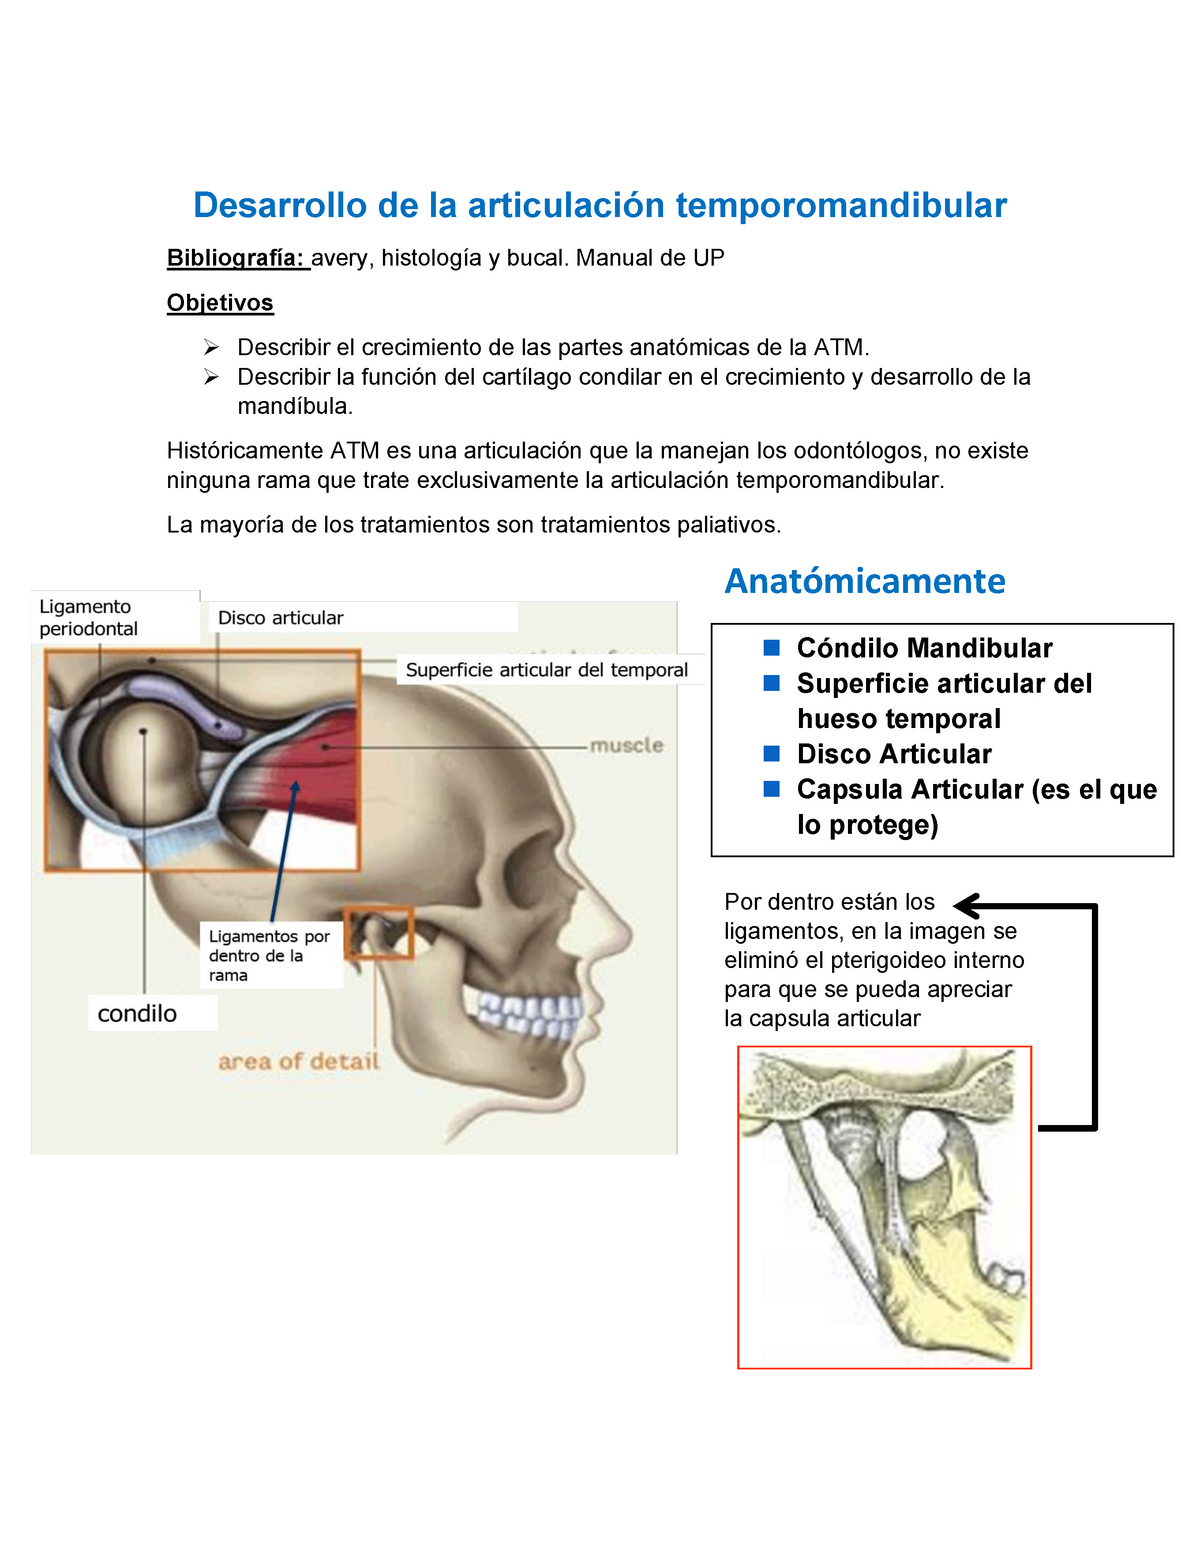 Desarrollo de la articulación temporomandibular - AU-112 - UNI - Studocu